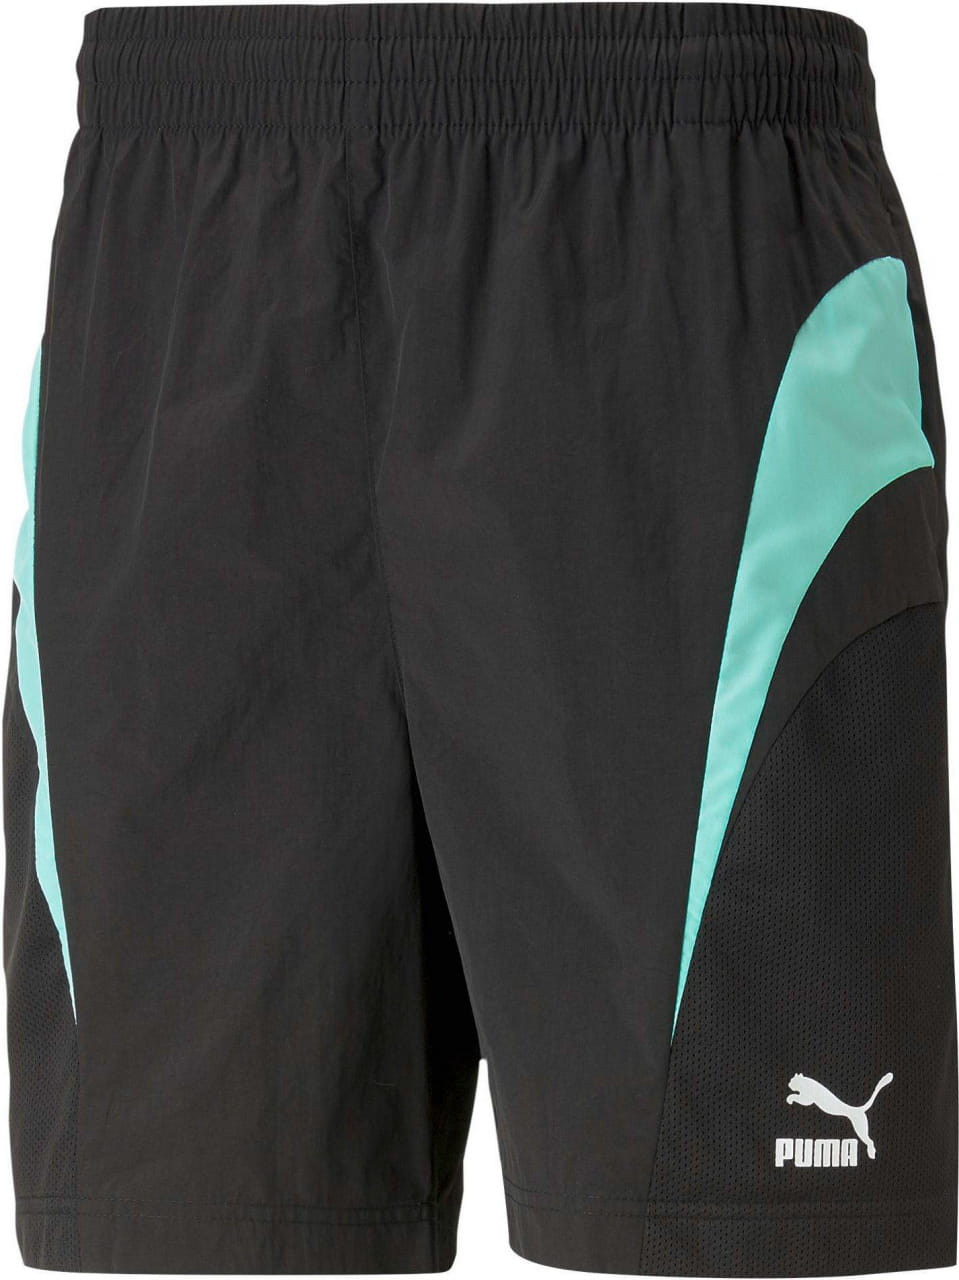 Moške športne hlače Puma Swxp Shorts